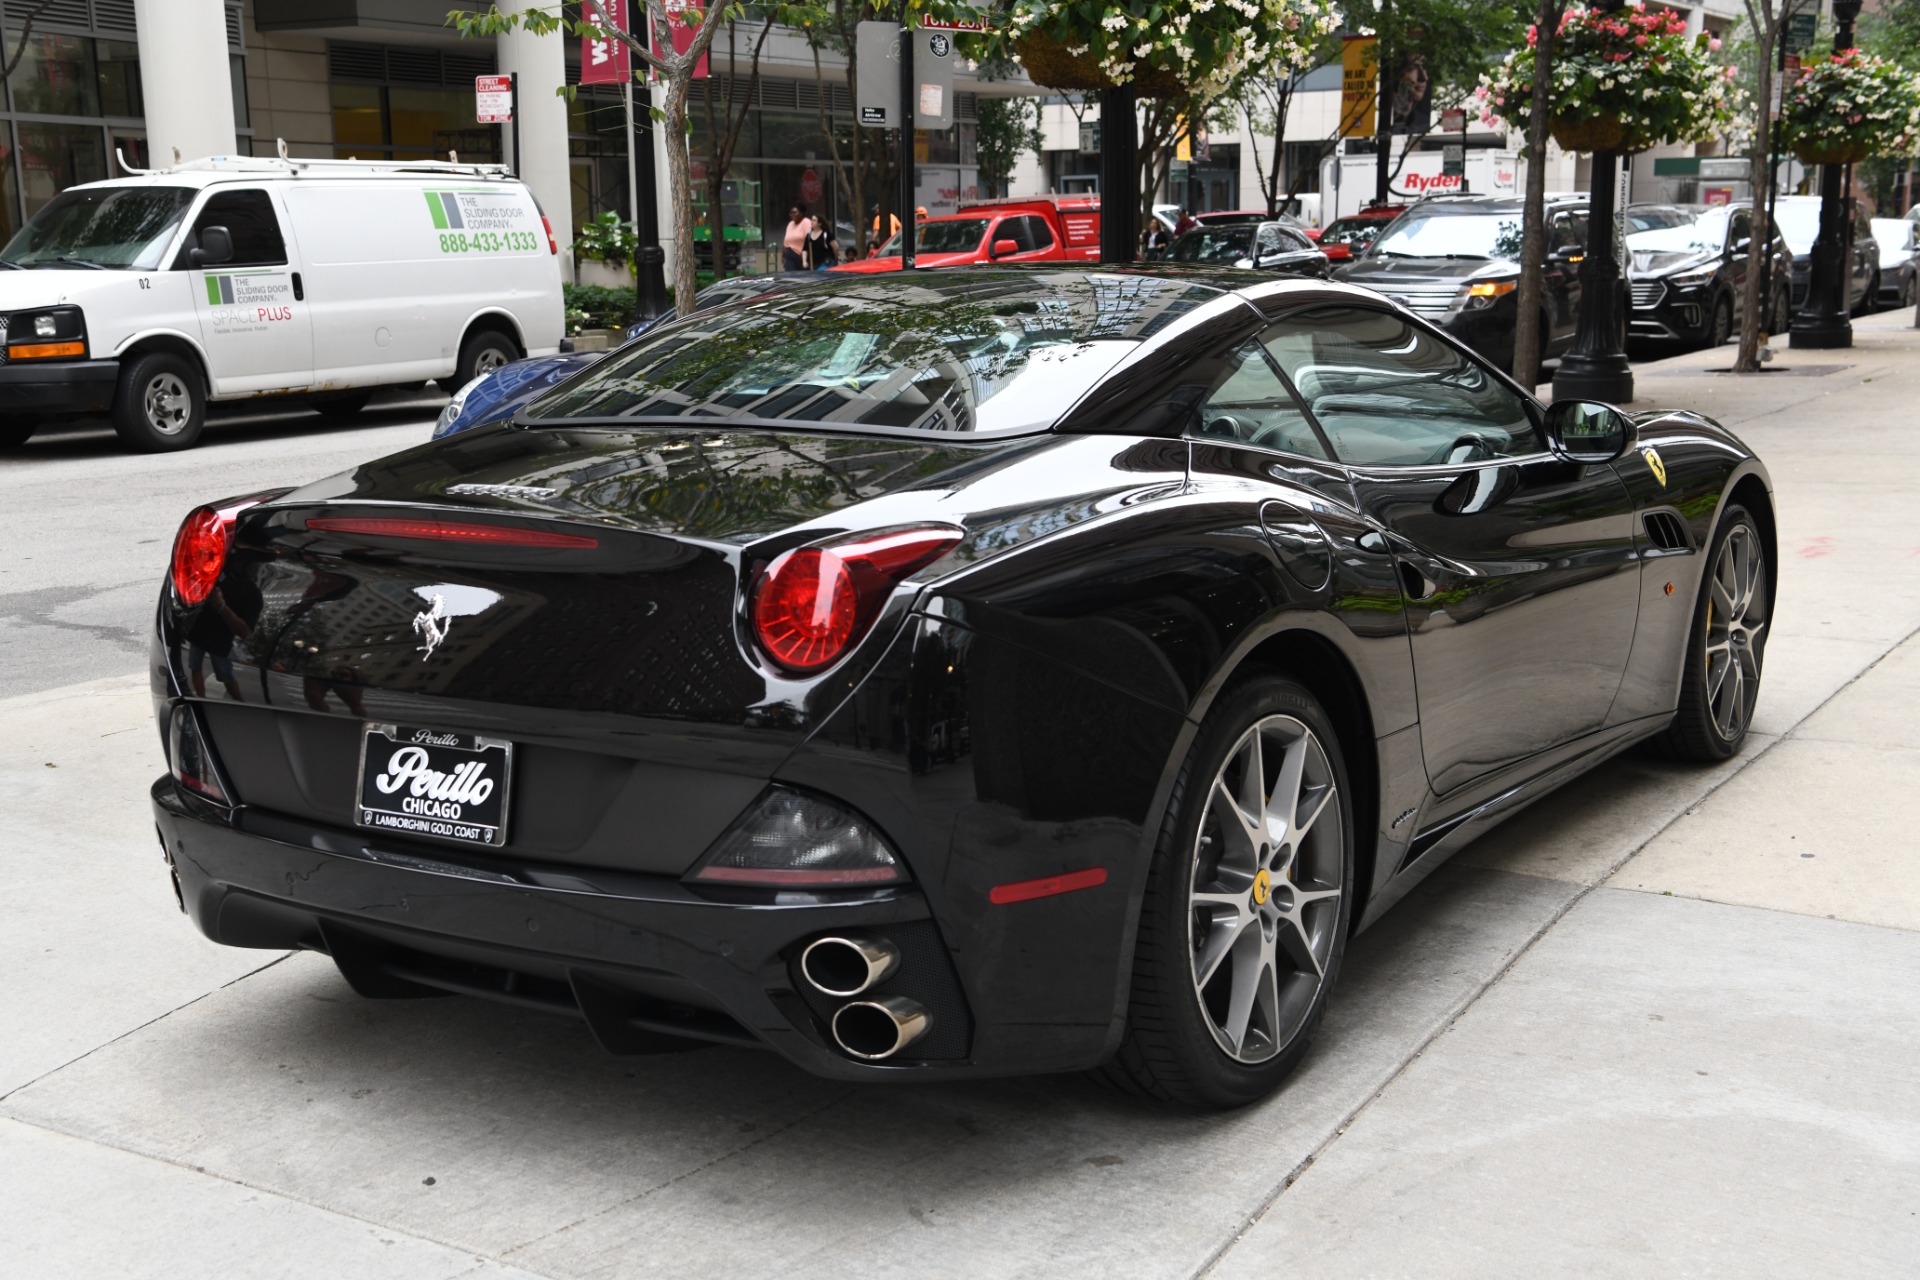 Used 2012 Ferrari California  | Chicago, IL